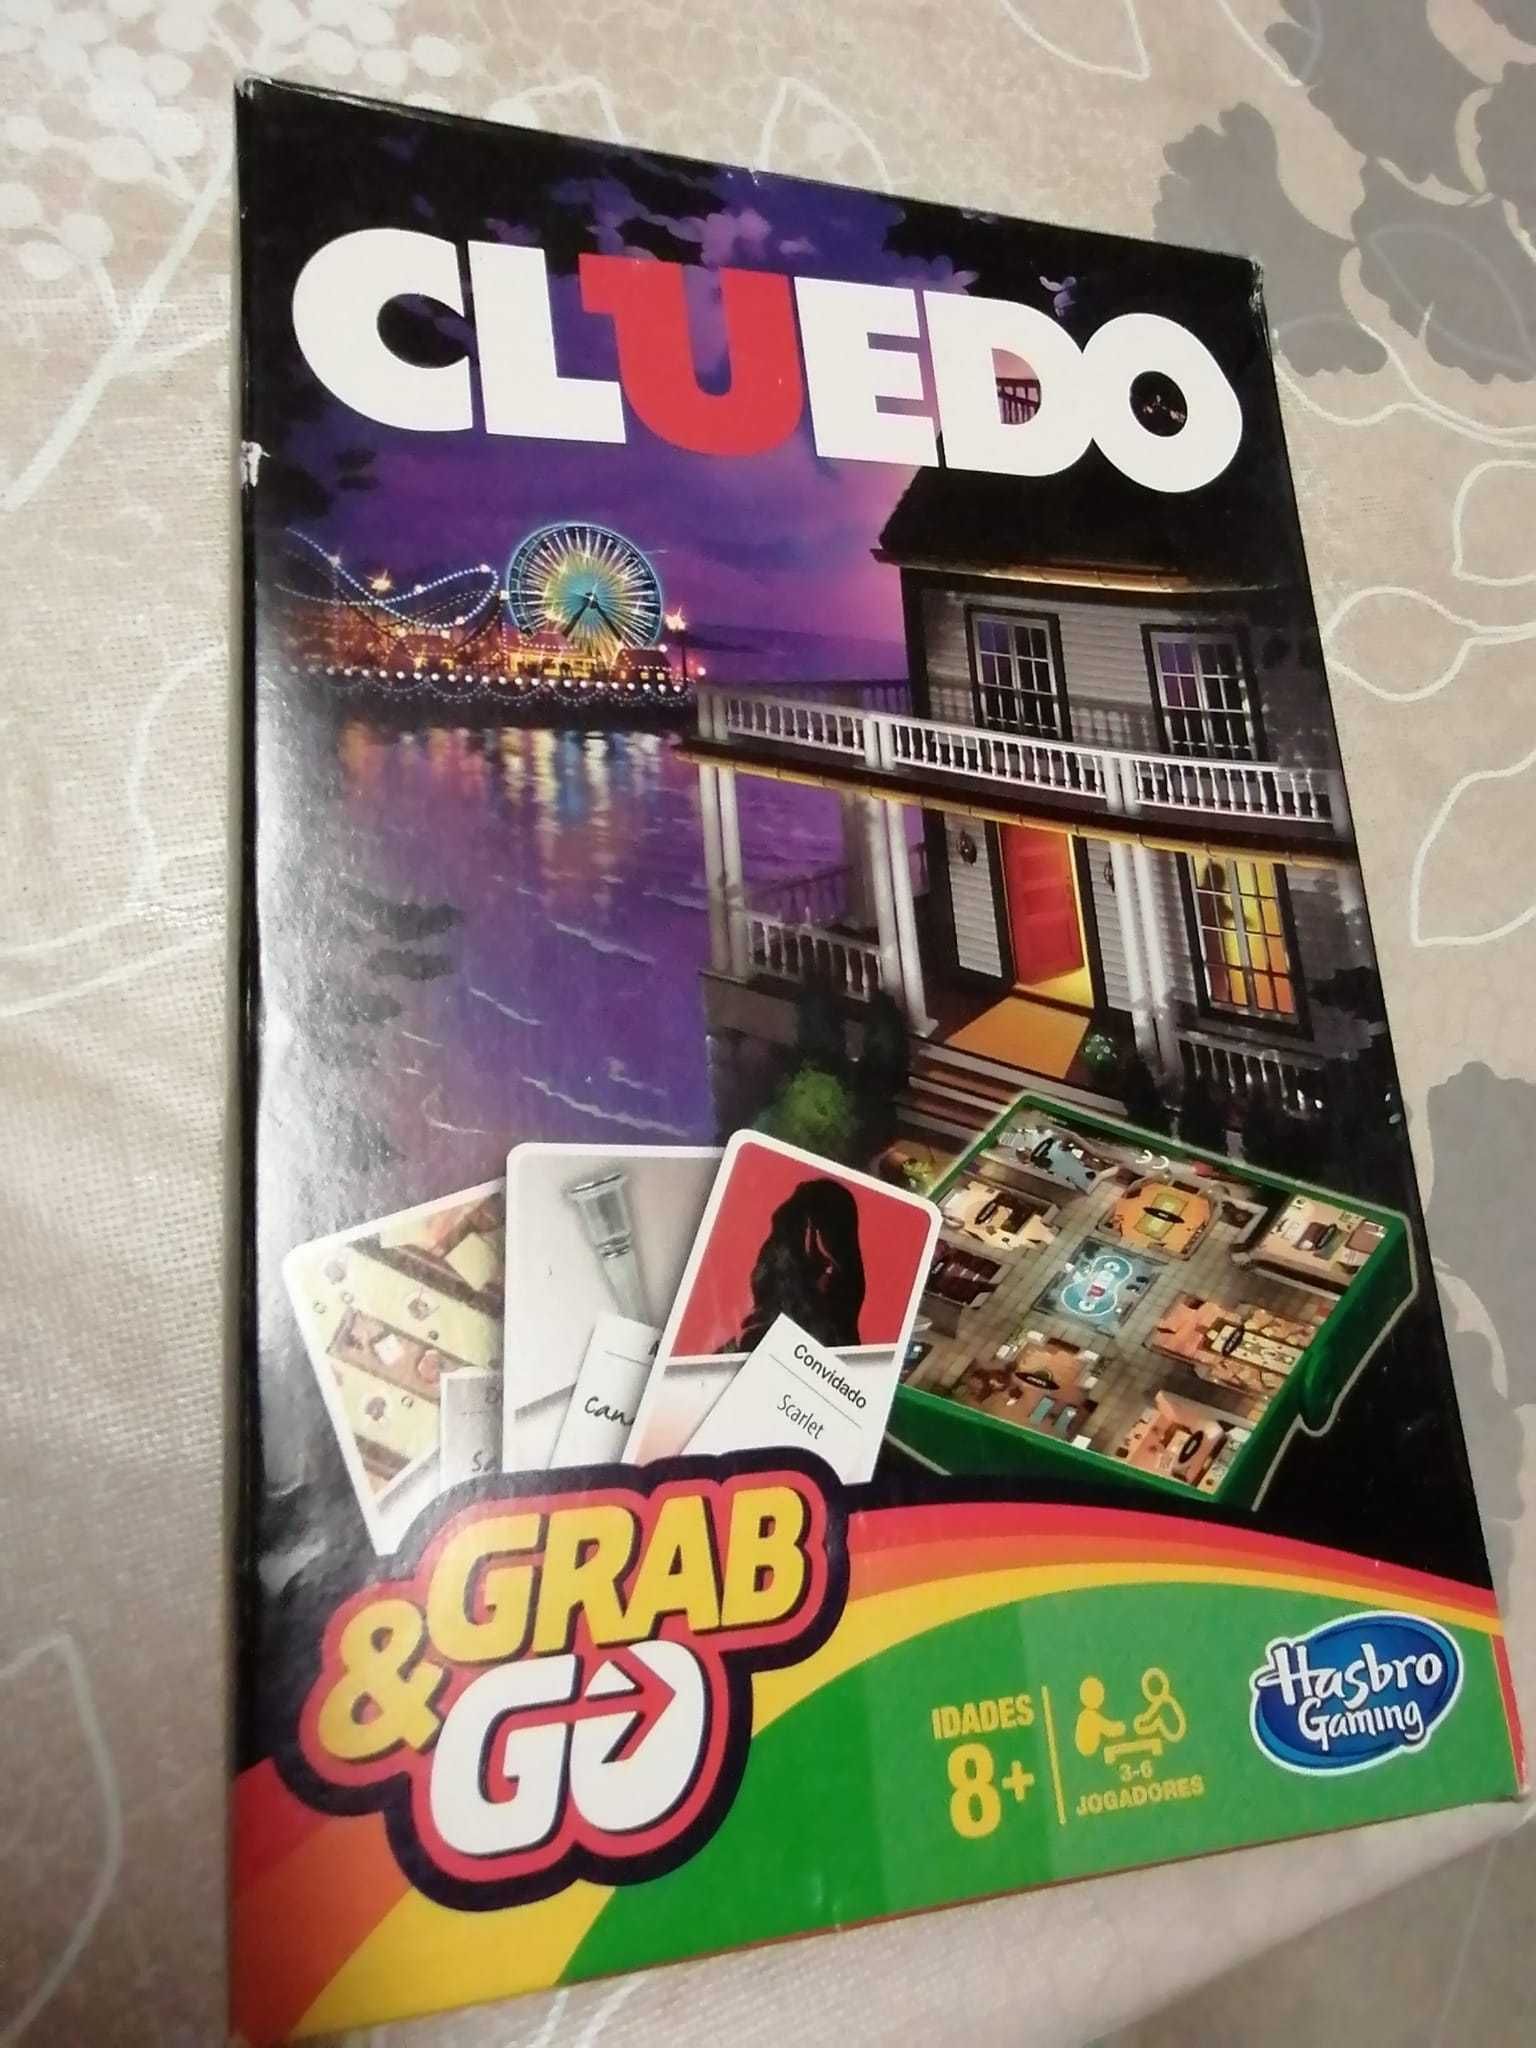 Jogo Cluedo Escape Game Coimbra • OLX Portugal